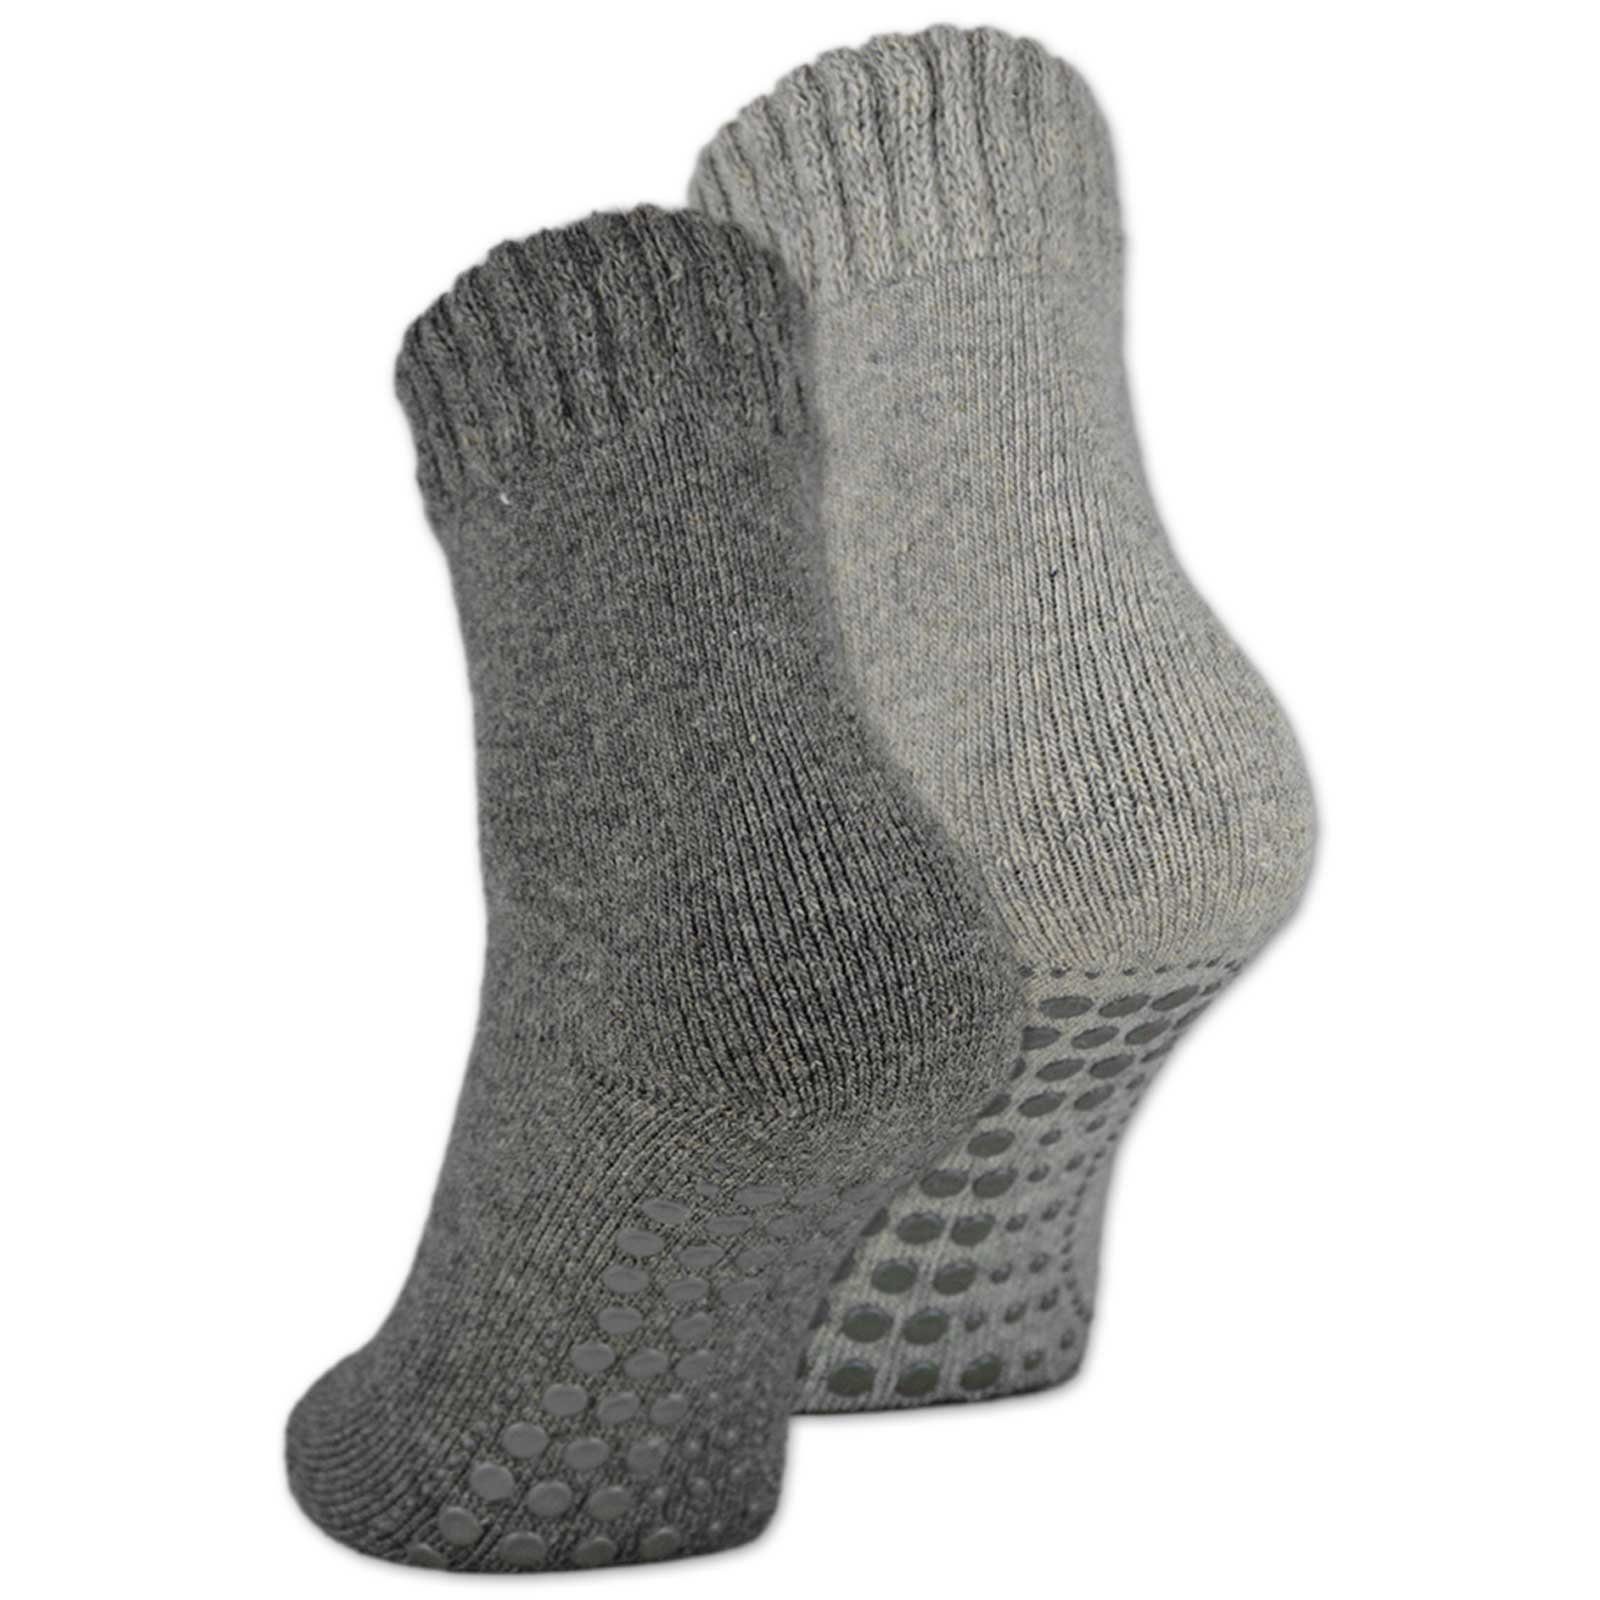 4 sockenkauf24 Socken - Rutsch WP oder Damen 2, 6 Anti ABS Wolle Socken 2-Paar, 39-42) Paar mit Herren ABS-Socken 21463 & (Grau/Anthrazit,